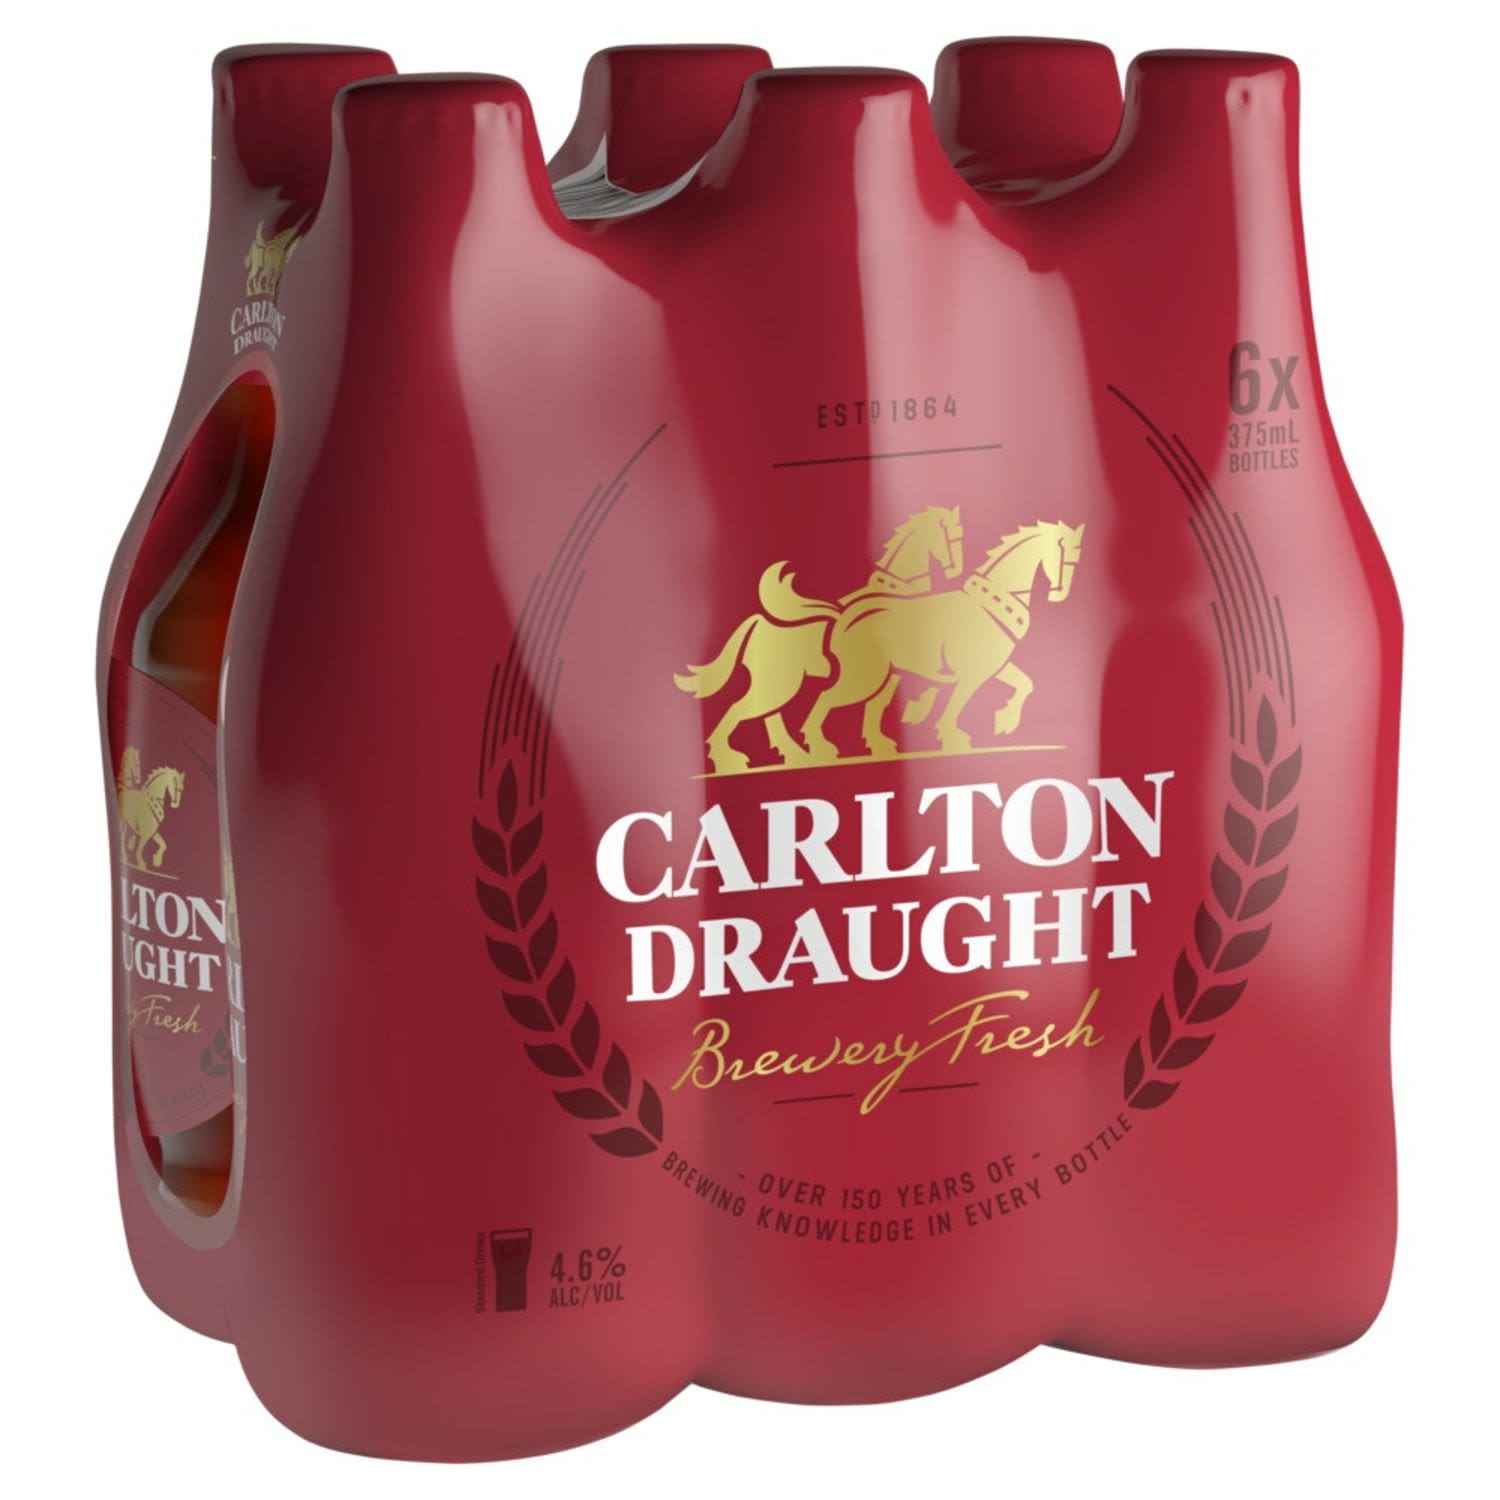 Carlton Draught Bottles 375mL<br /> <br />Alcohol Volume: 4.60%<br /><br />Pack Format: 6 Pack<br /><br />Standard Drinks: 1.4<br /><br />Pack Type: Bottle<br /><br />Country of Origin: Australia<br />